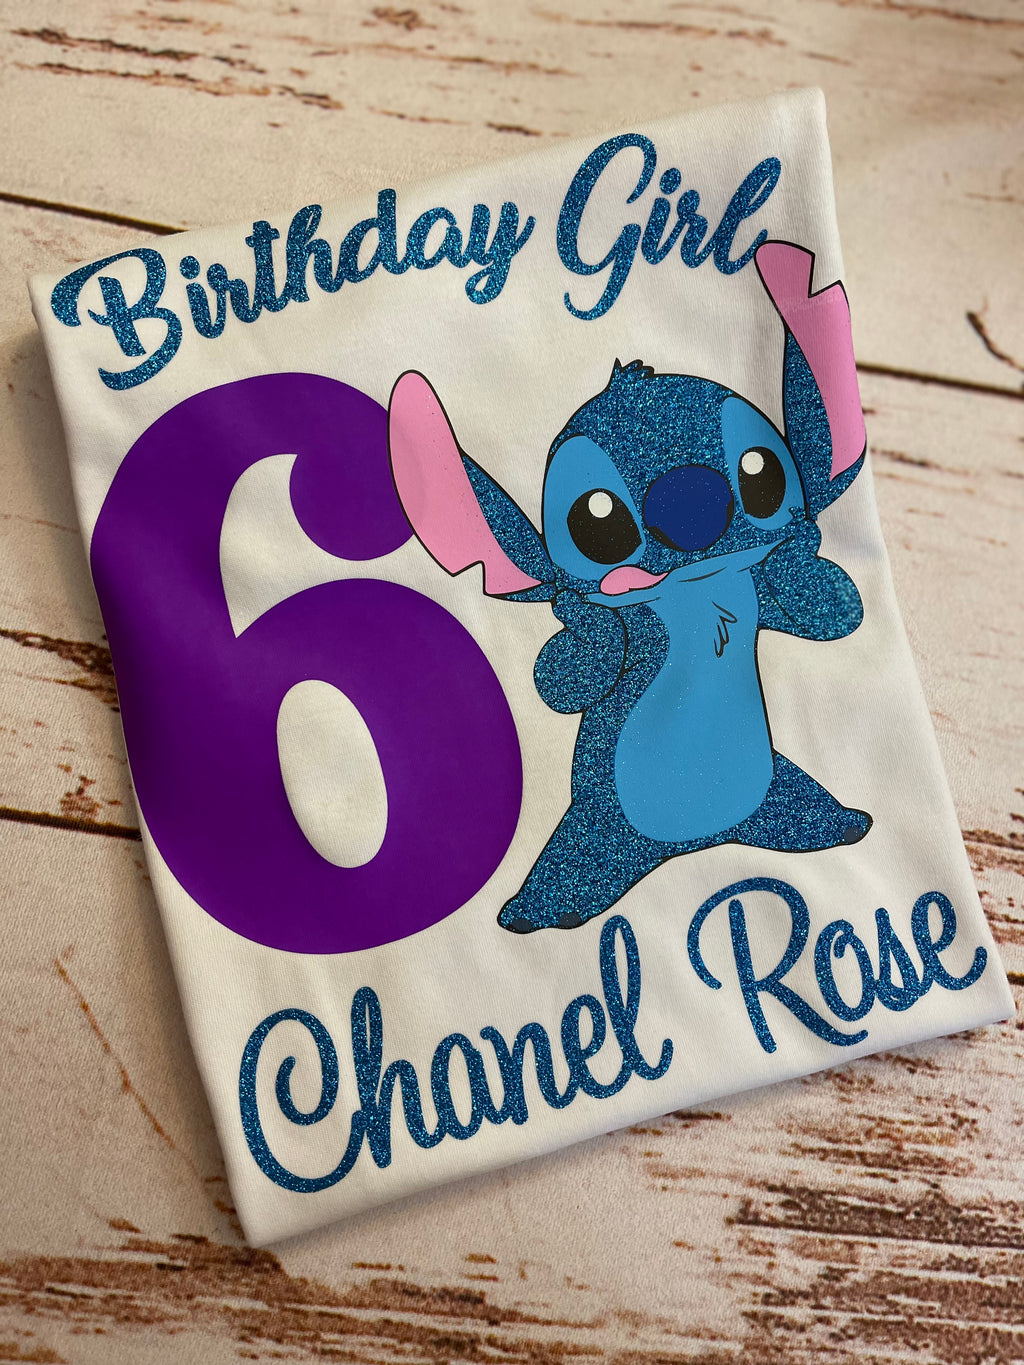 A Chanel birthday!